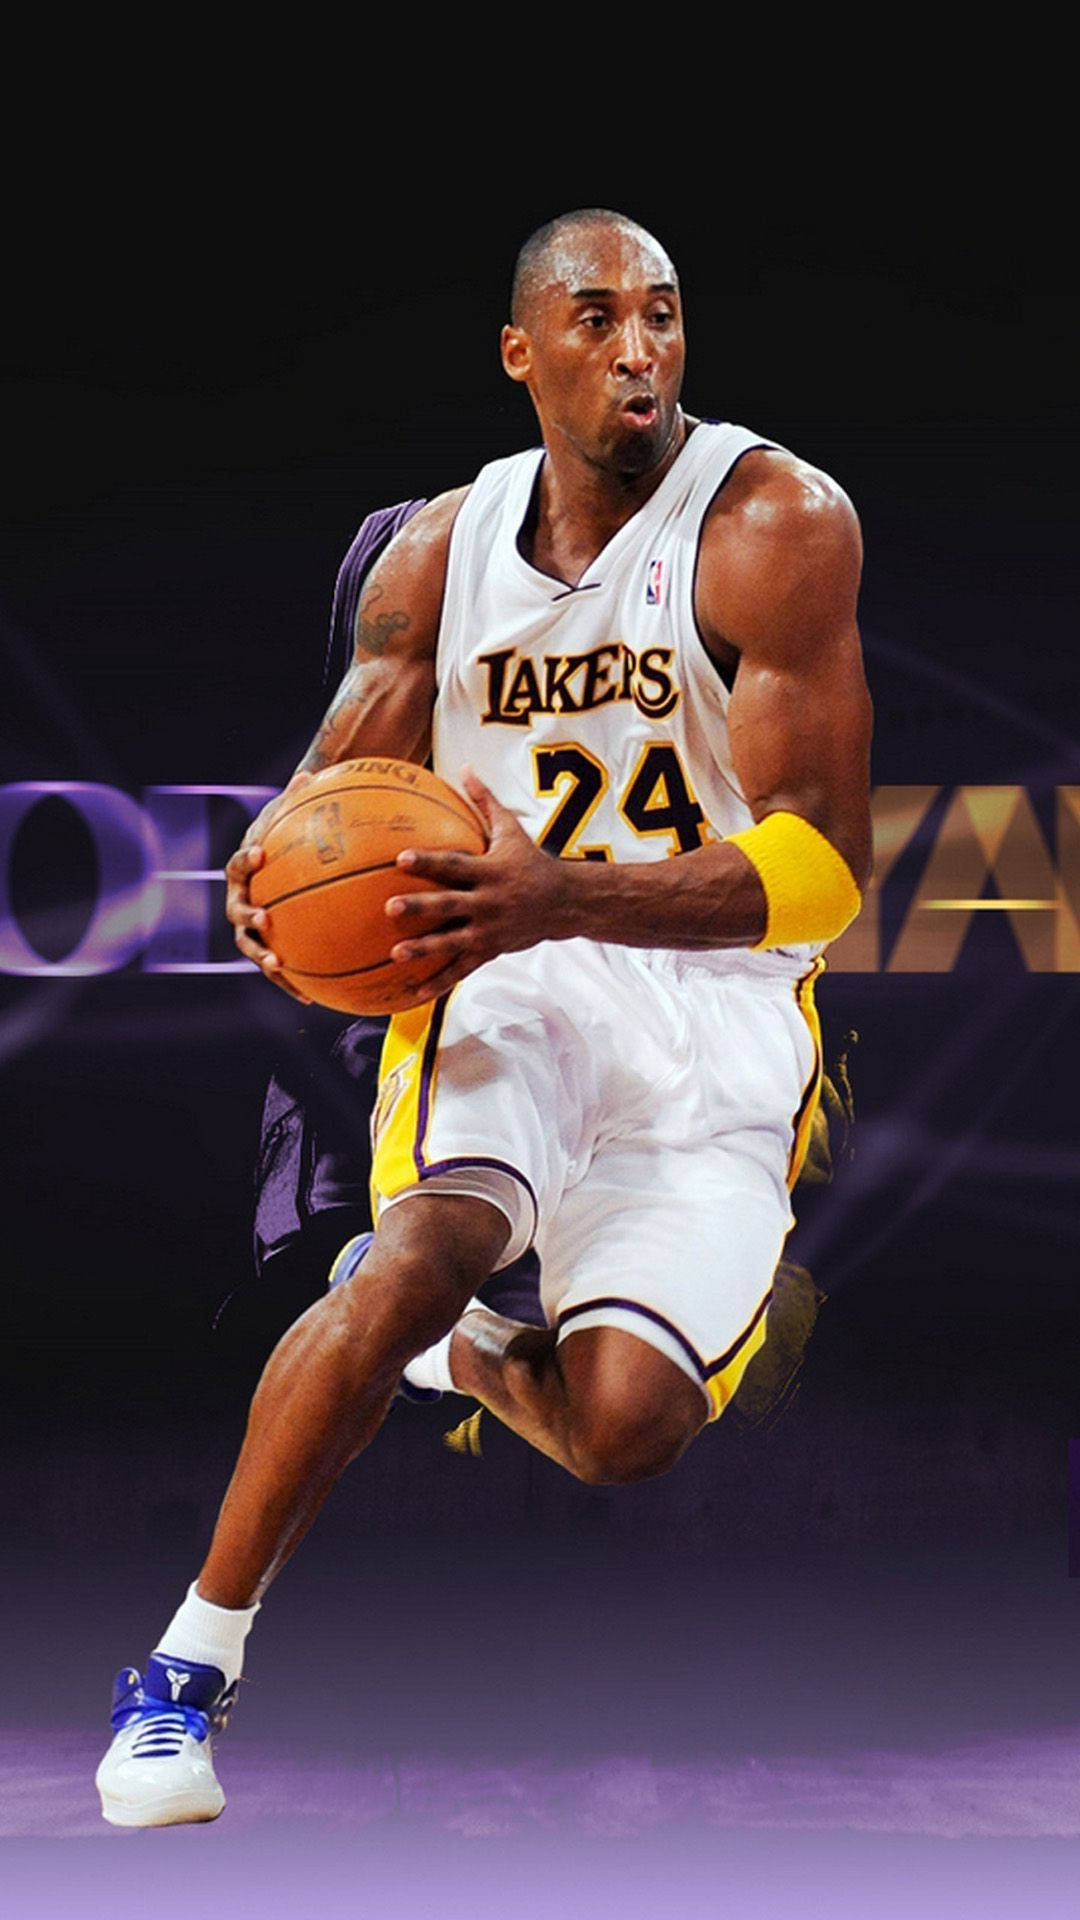 Wallpaperbasketballlegenden Kobe Bryant Iphone-bakgrundsbild. Wallpaper